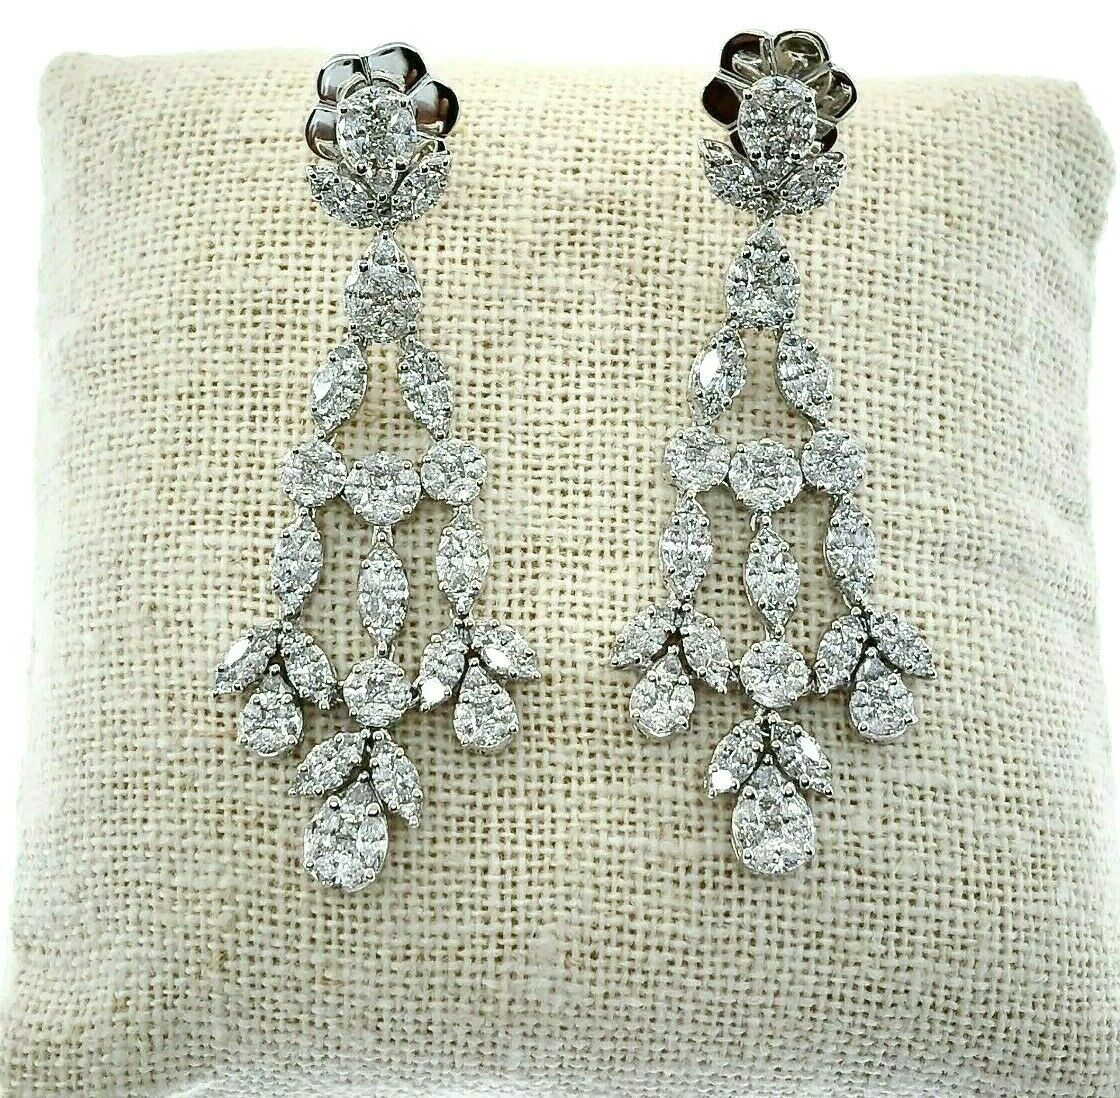 8.20 Carats t.w. Diamond Chandelier Gala Dangle Earrings 18K Gold 2.15 Inch Drop